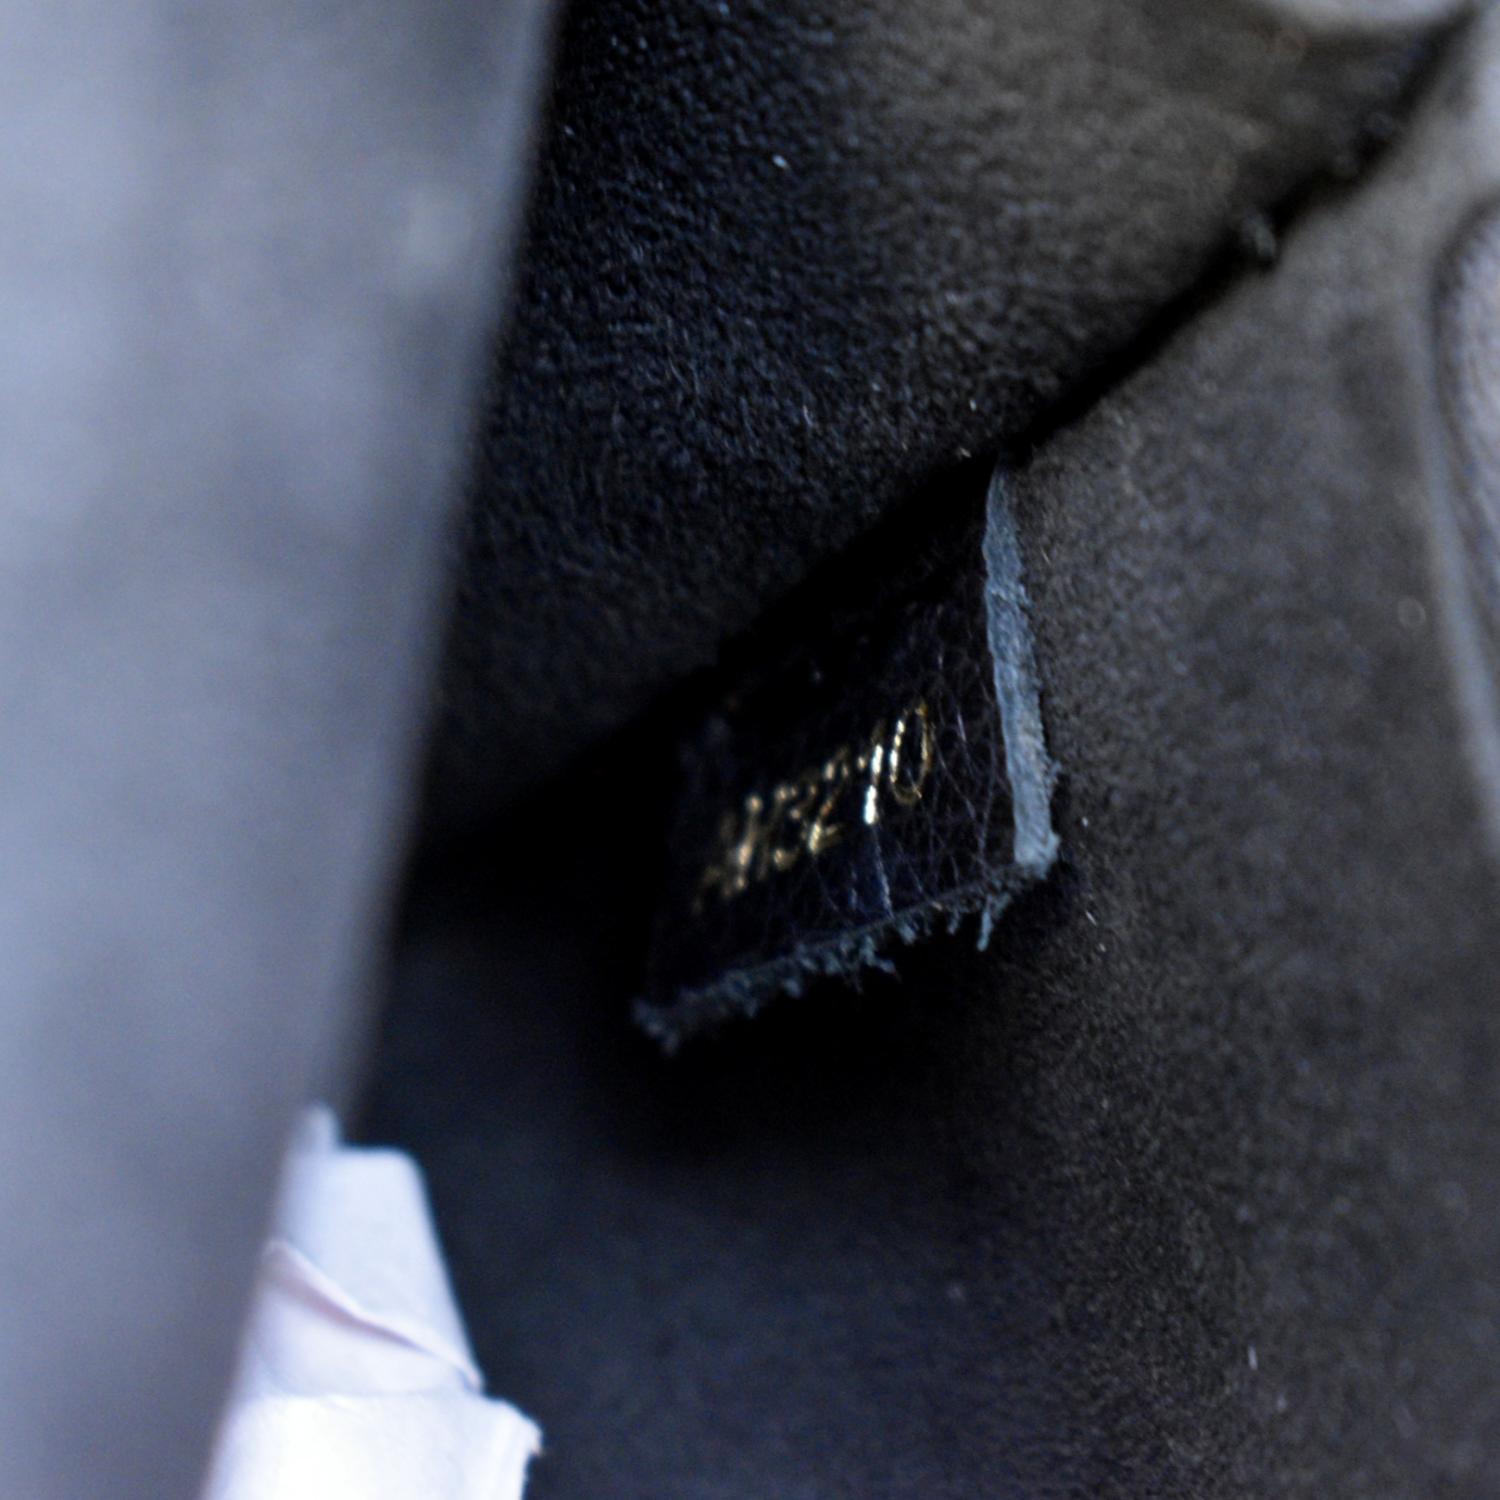 Louis+Vuitton+Victoire+Shoulder+Bag+Medium+Black%2FBrown+Canvas%2FLeather  for sale online